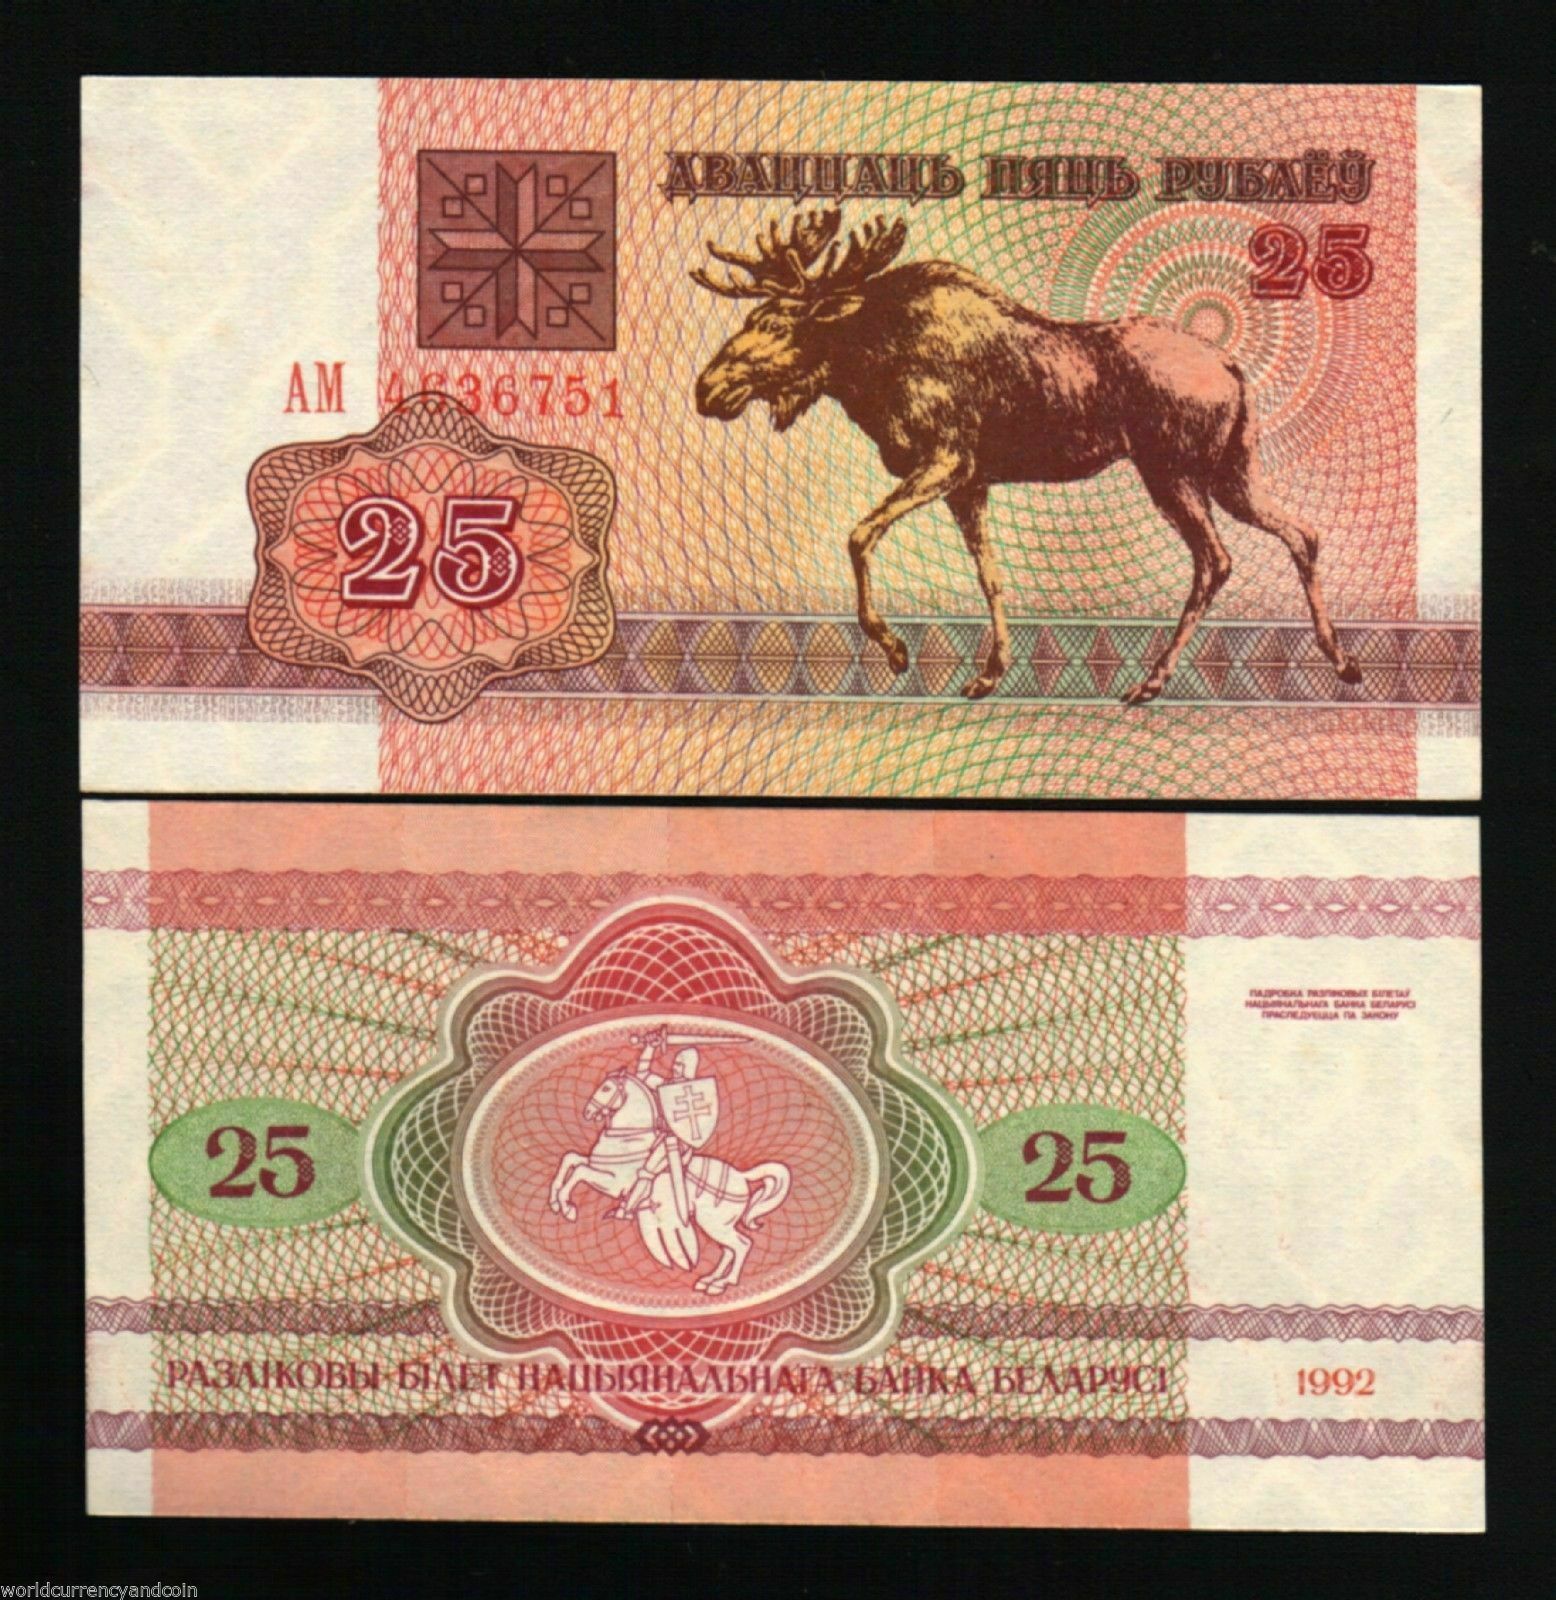 Tờ 25 rubles Belarus hình Linh dương đàu bò, tặng kèm phơi bảo quản tiền